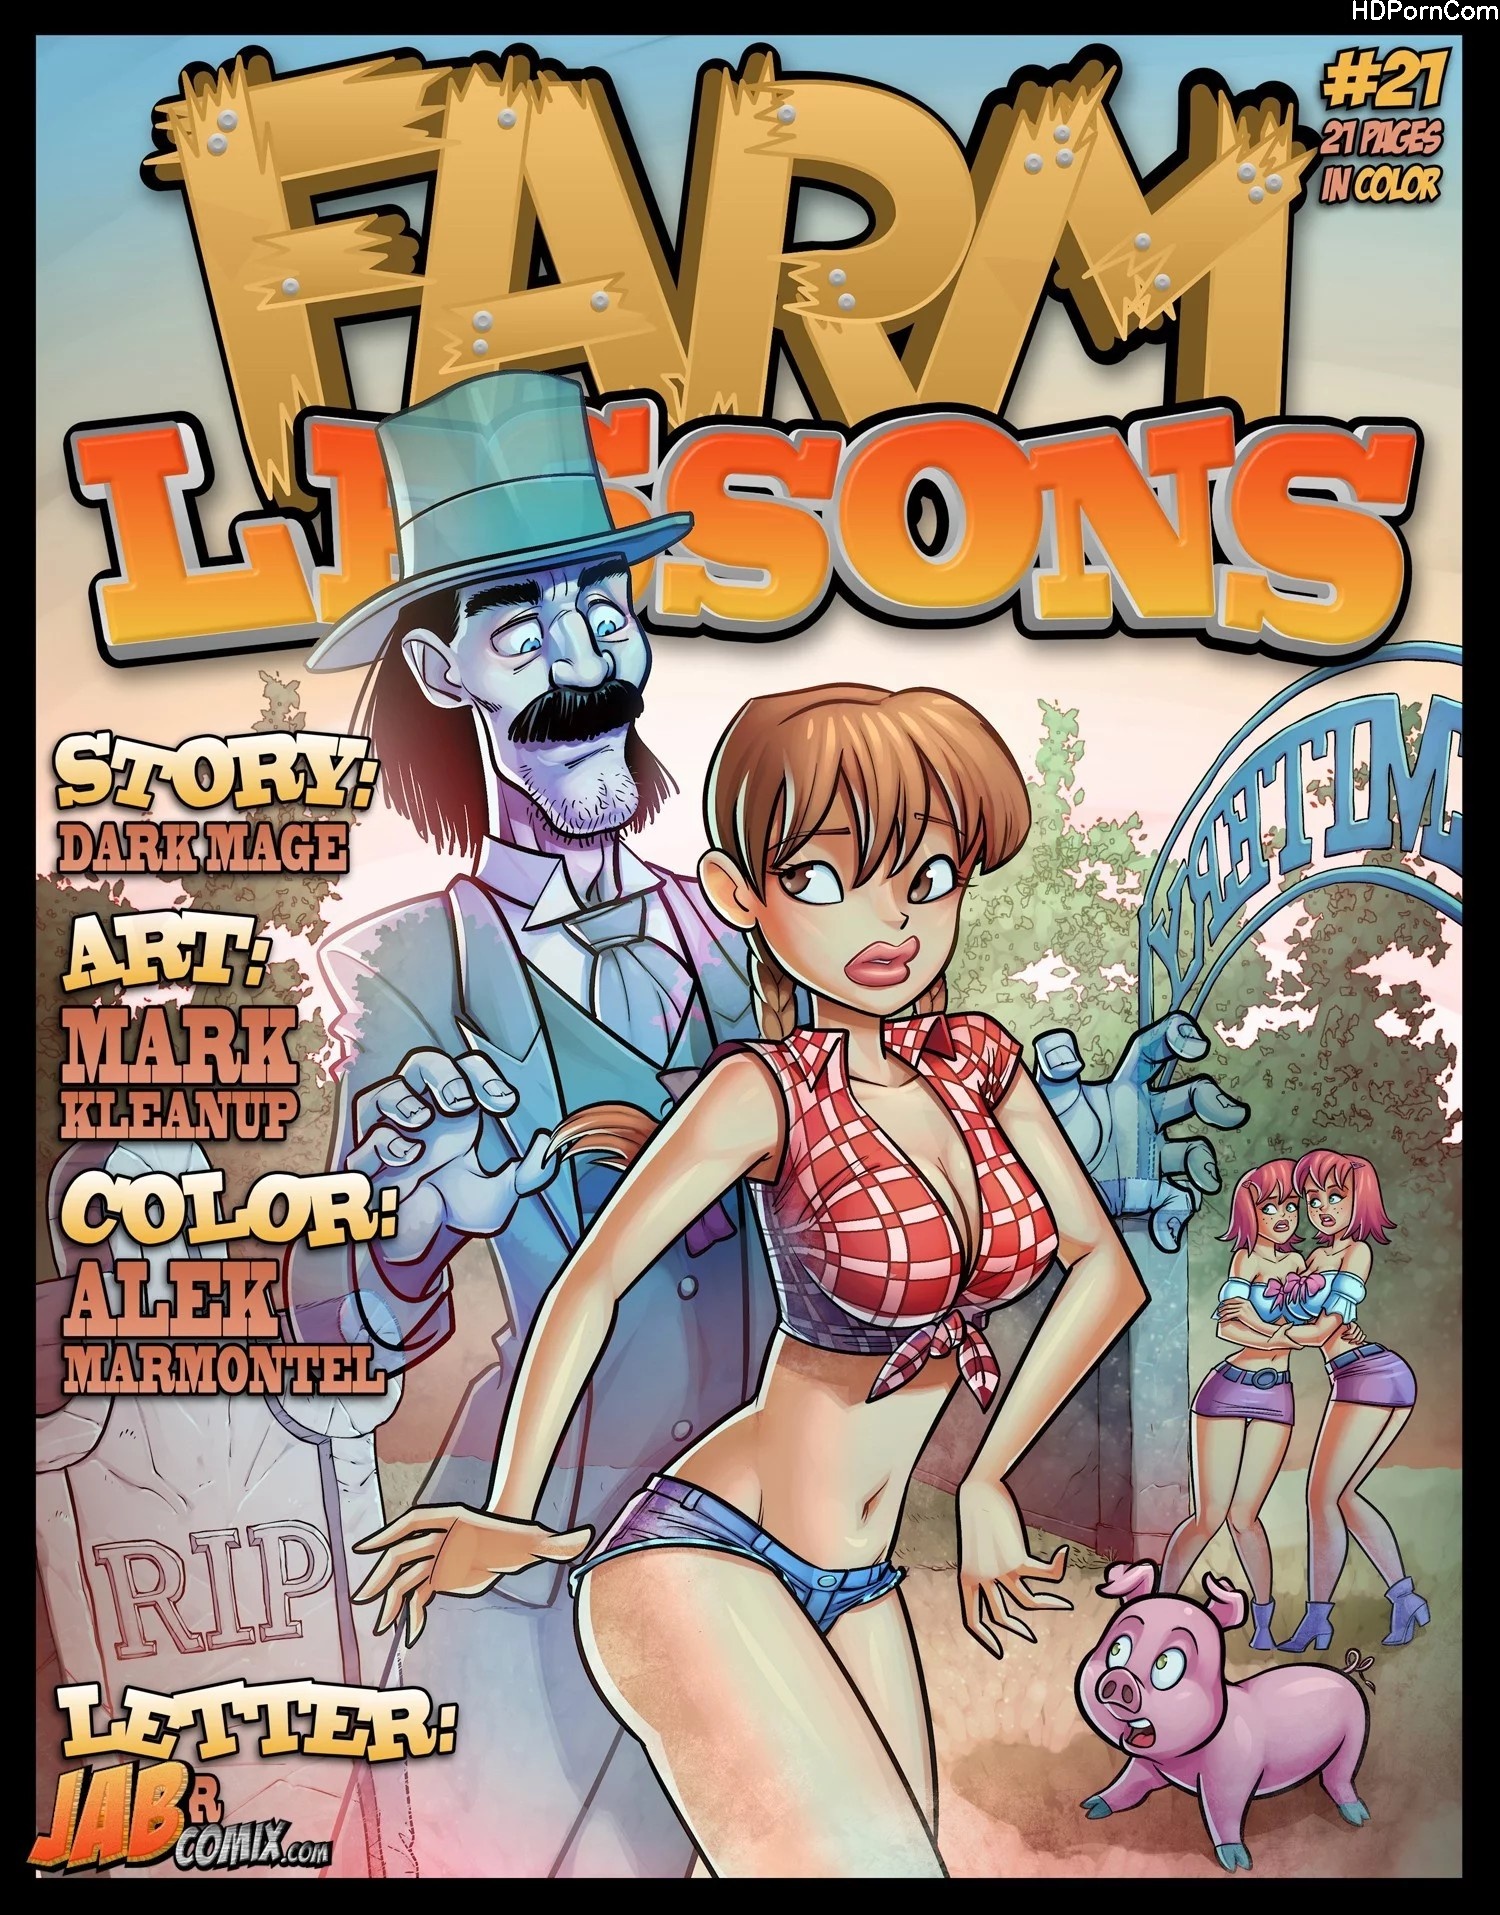 Jab Comix Cartoon Porn Comics - Farm Lessons - Issue 21 comic porn | HD Porn Comics